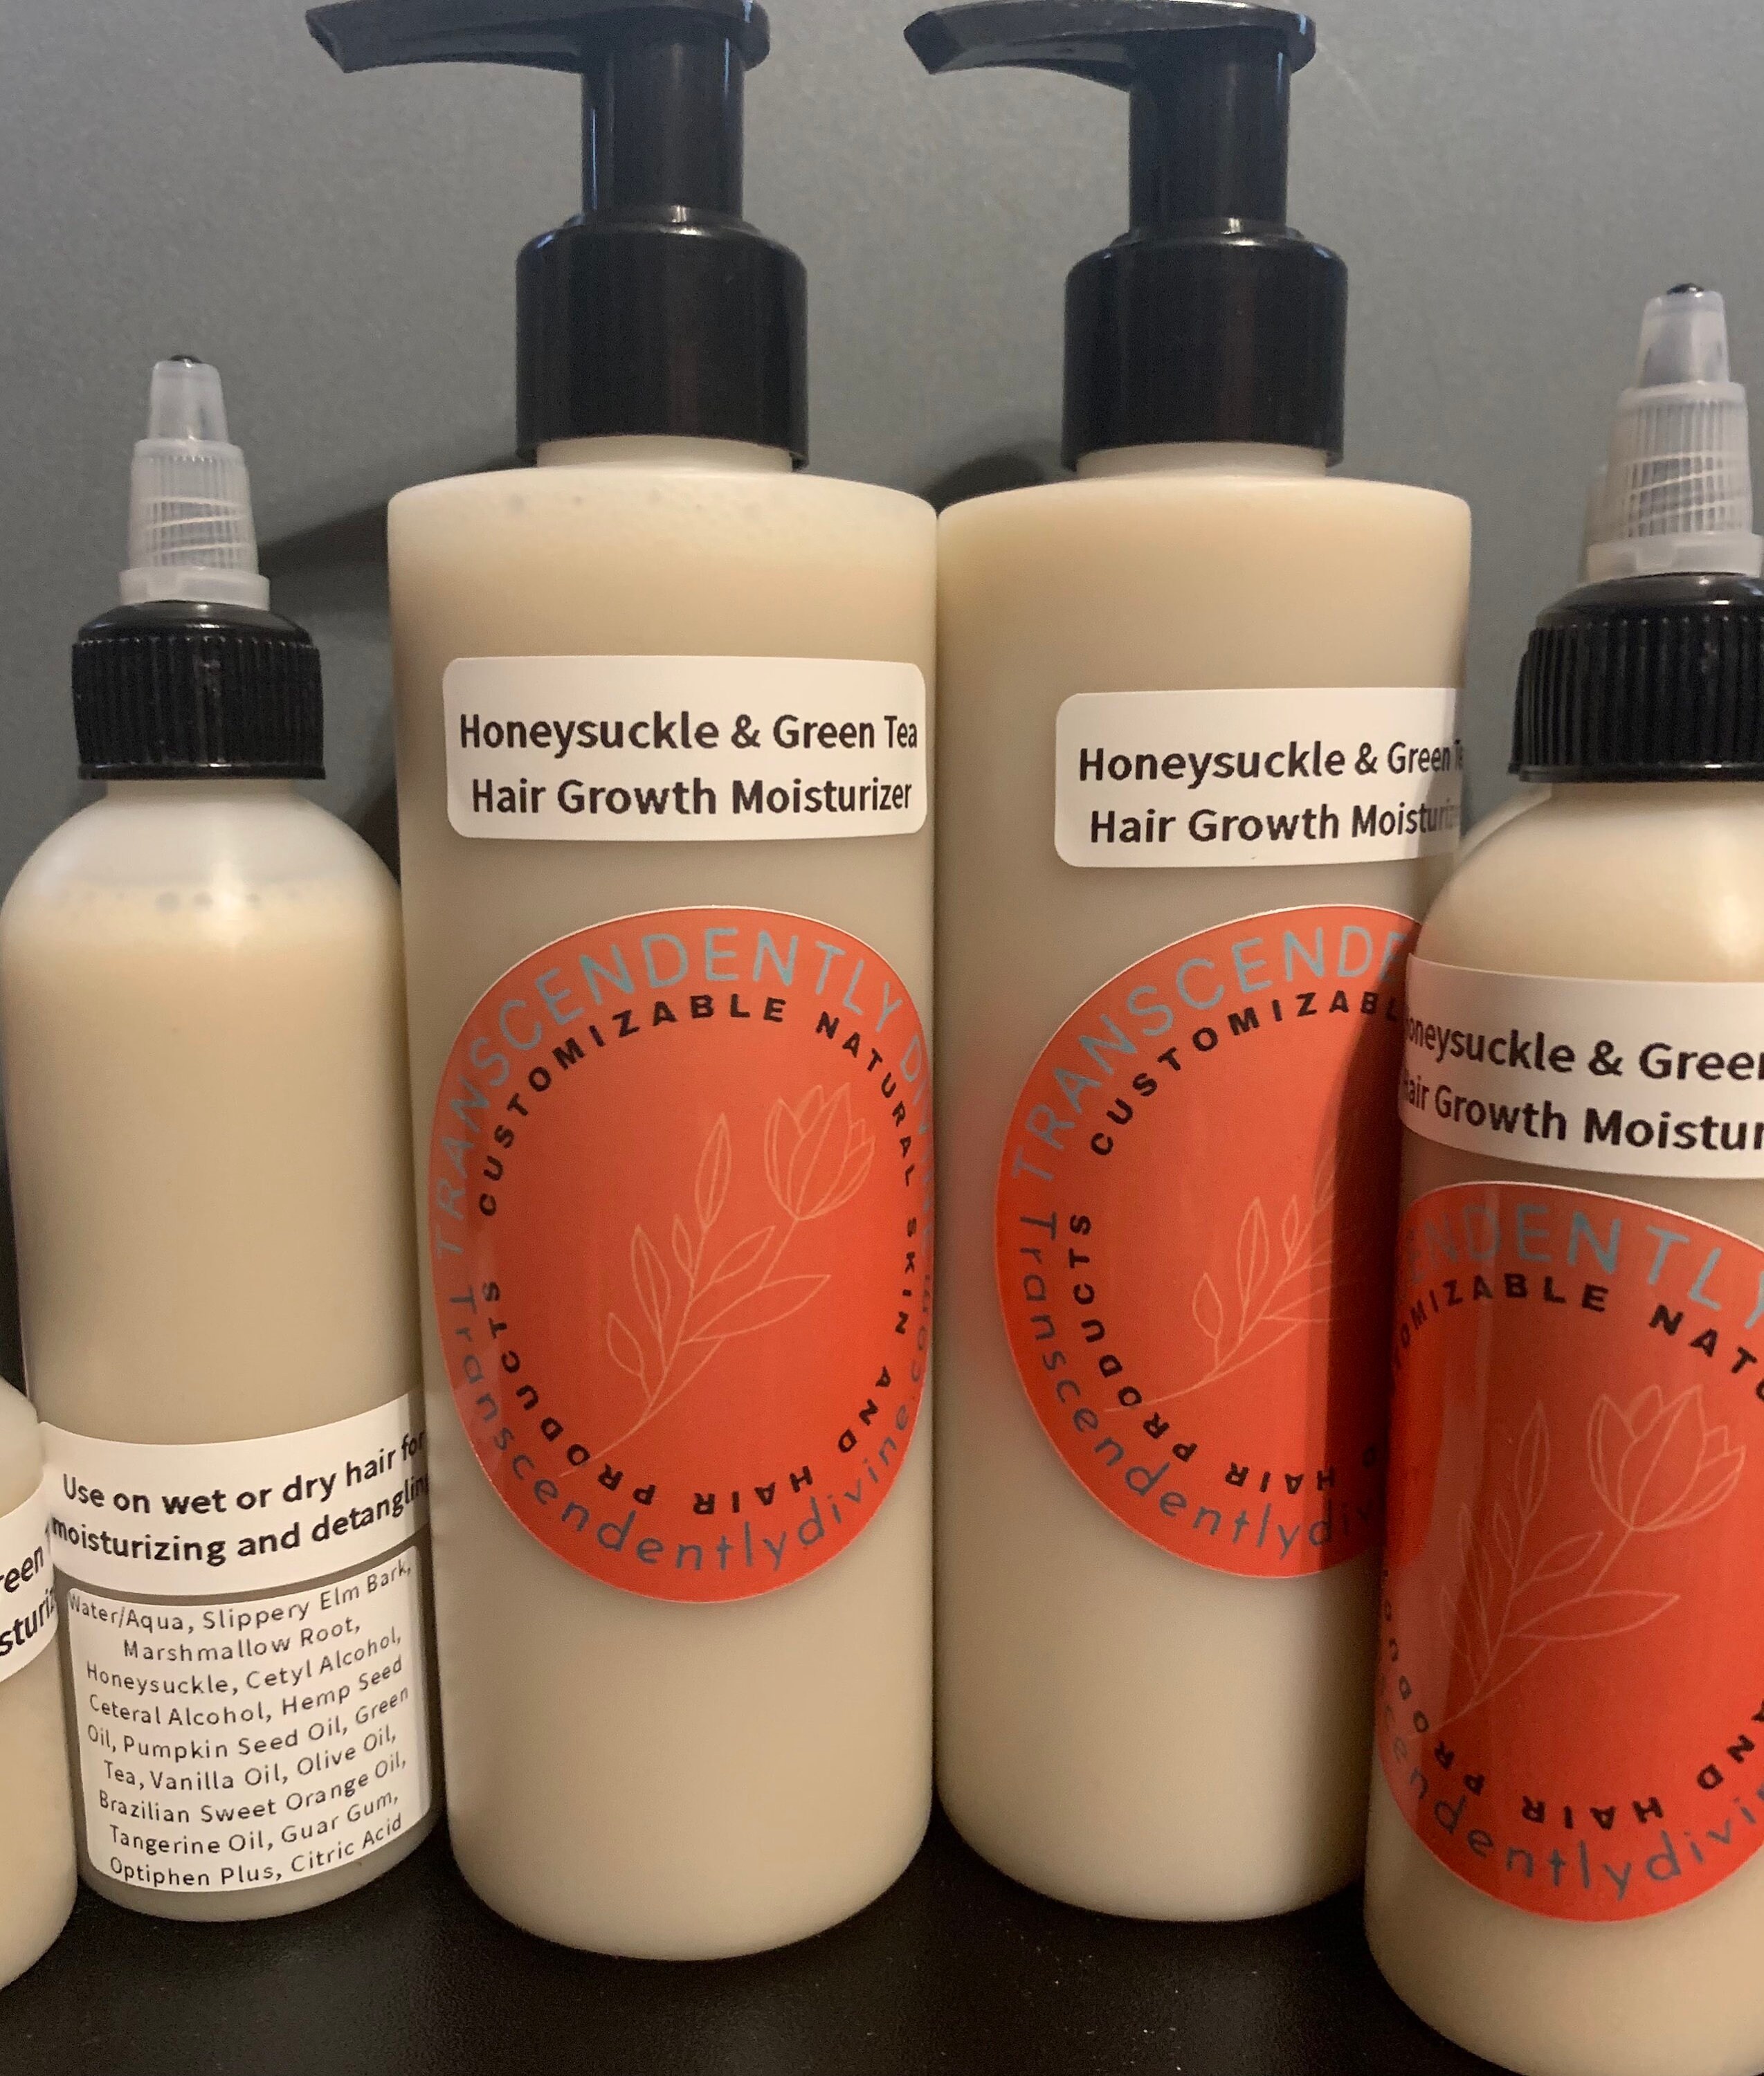 Honeysuckle & Green Tea Hair Growth Moisturizer - Etsy